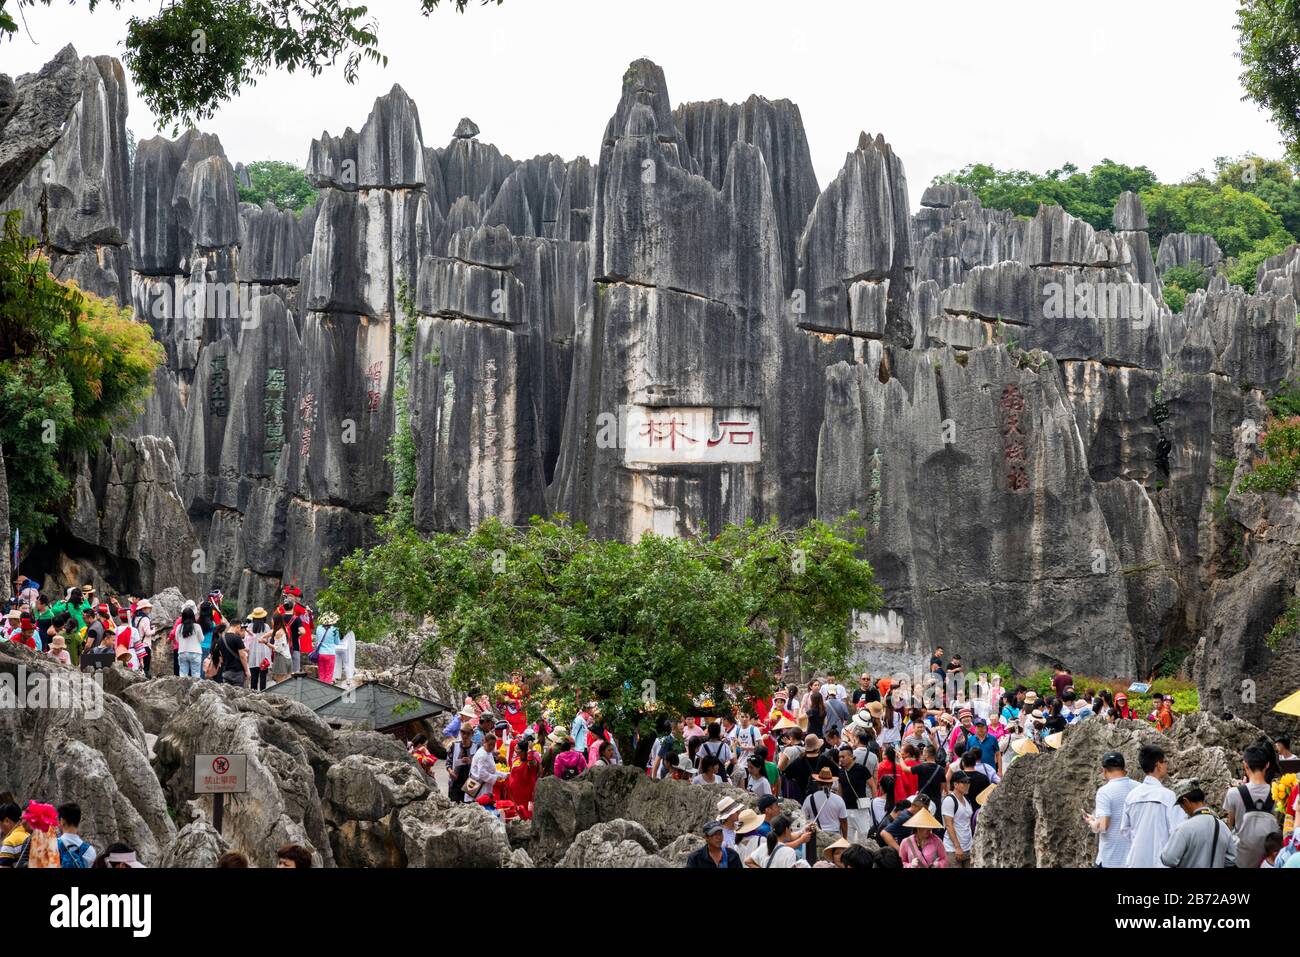 El Bosque de Piedra en Kunming, Yunnan es una maravilla geológica de piedra caliza que cubre más de 80 hectáreas y fue declarado Patrimonio de la Humanidad por la Unesco. Foto de stock